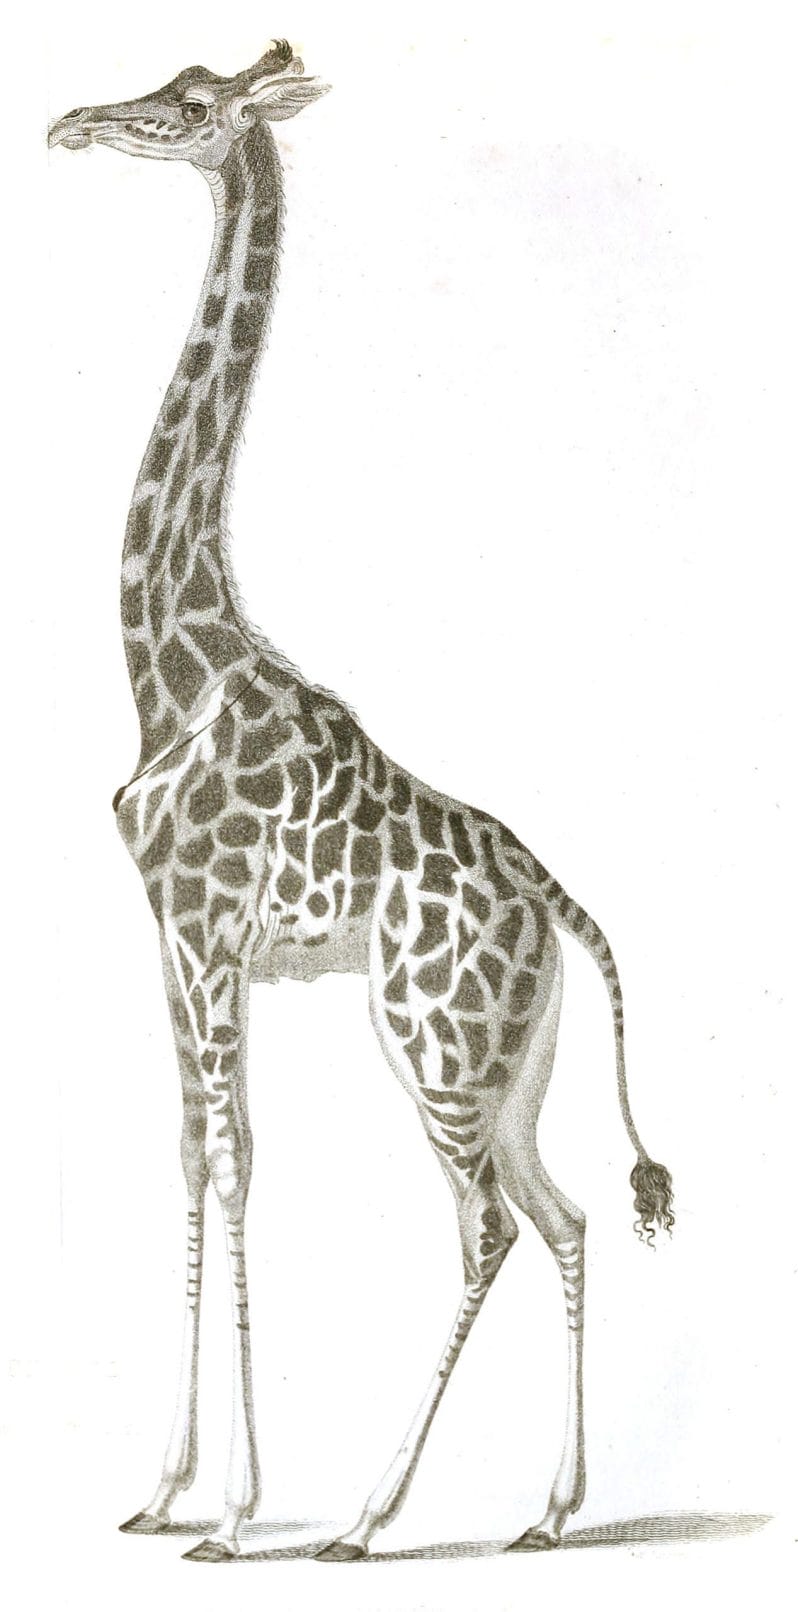 Black and White Giraffe illustrations By Robert Huish 1830